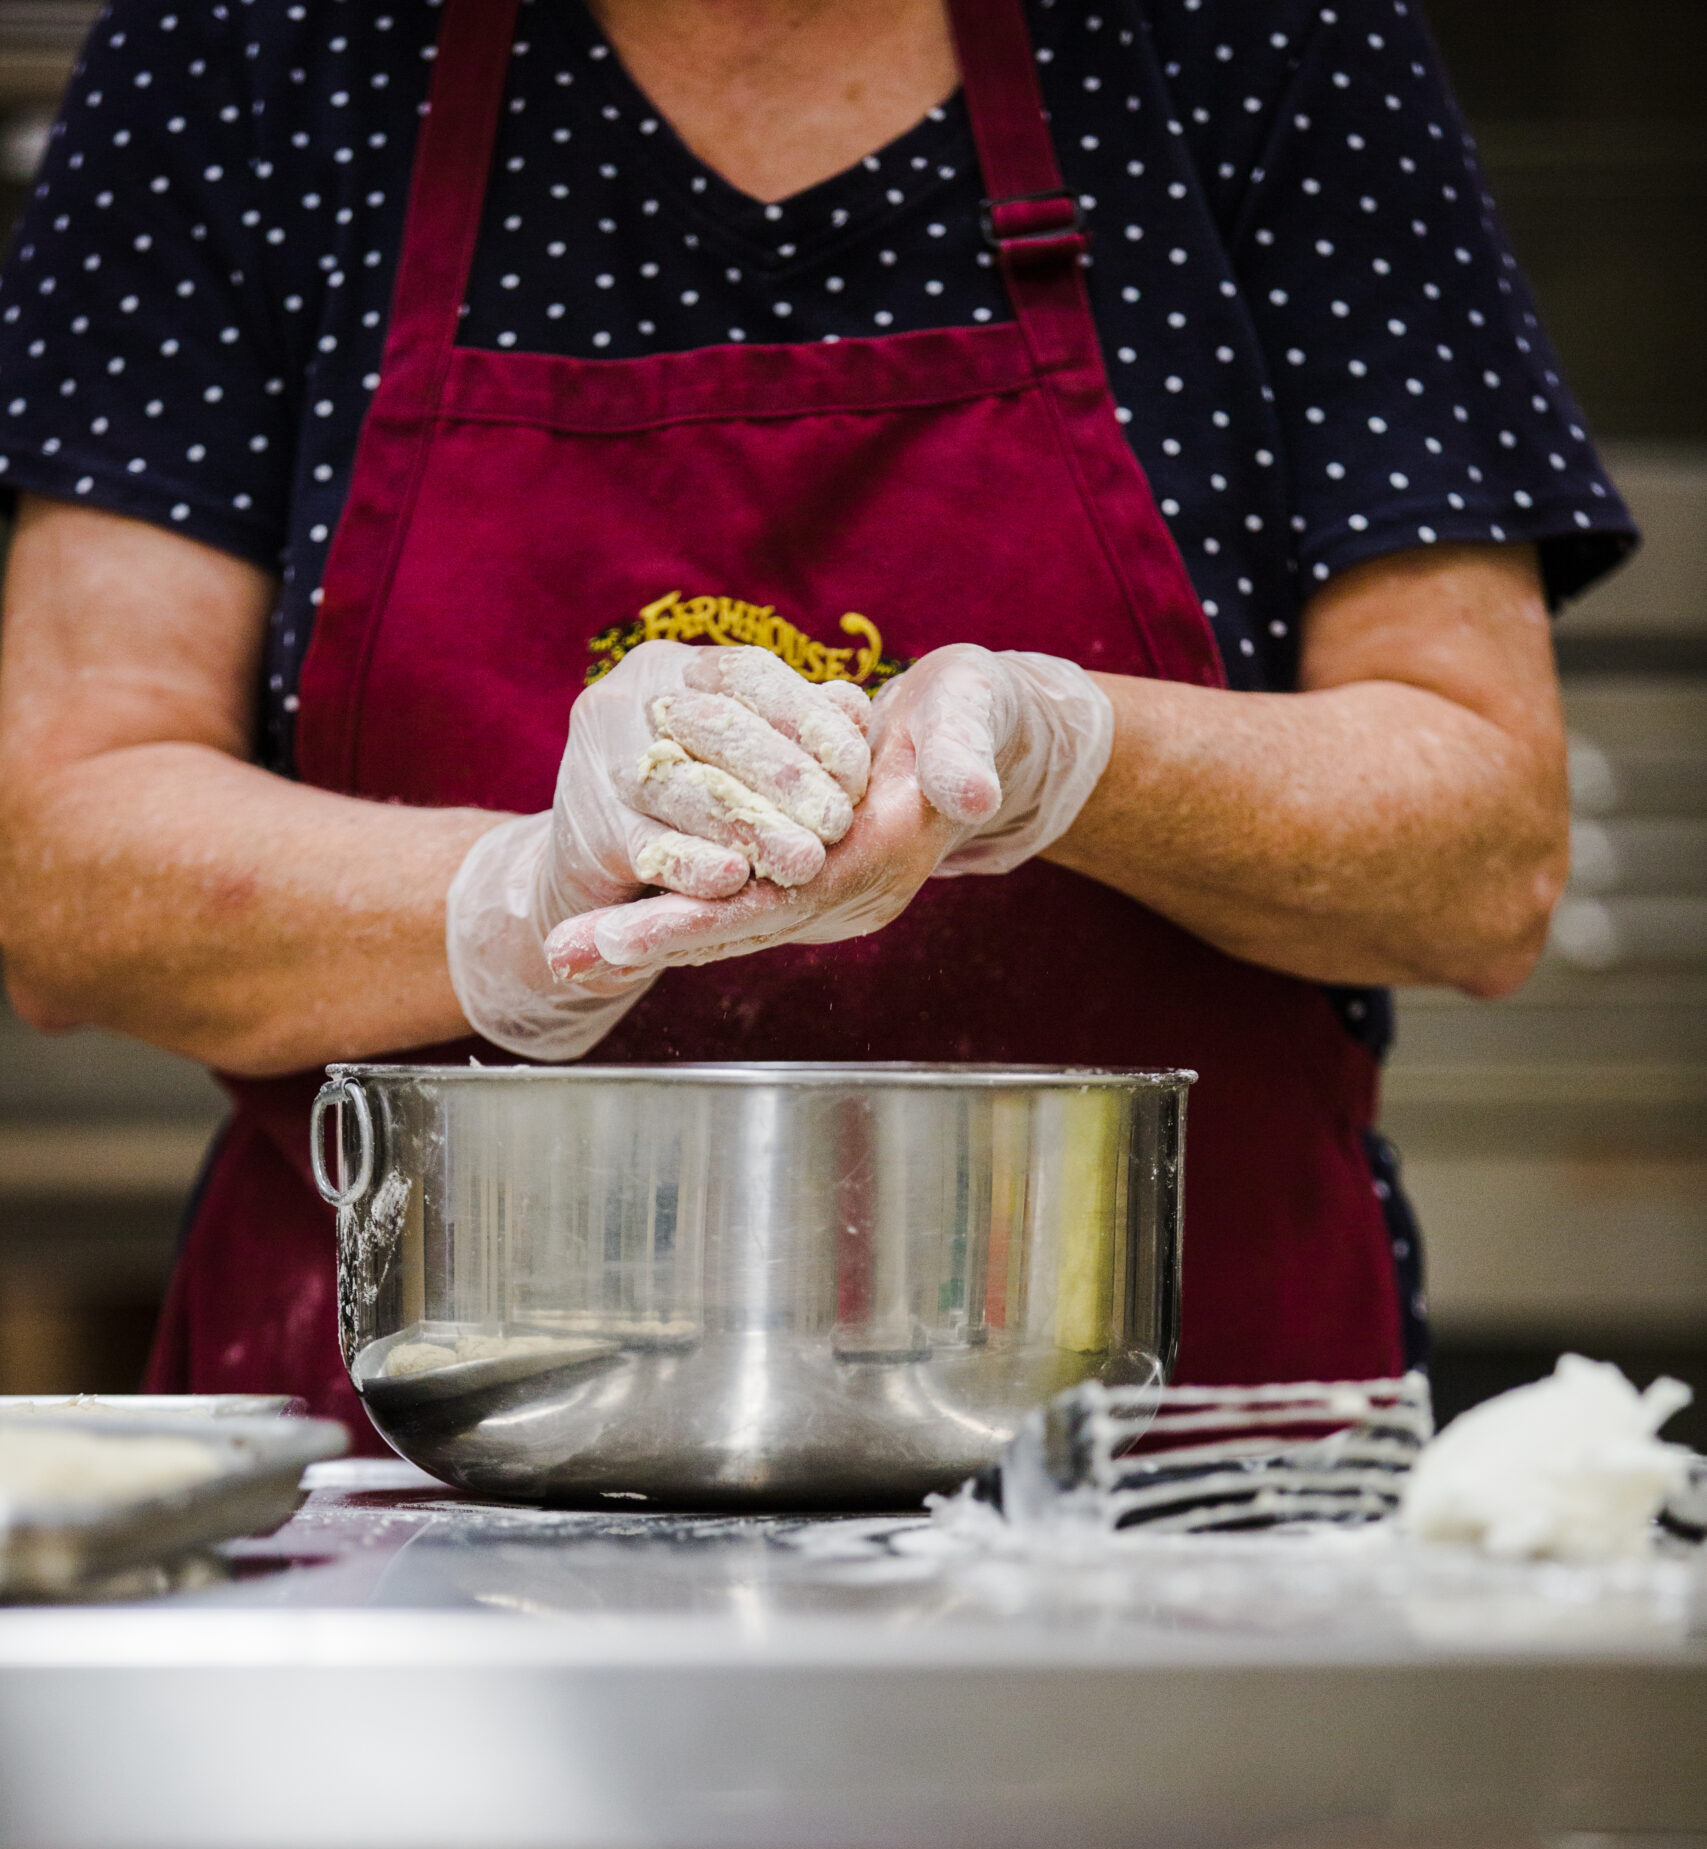 Woman in magenta apron prepares food